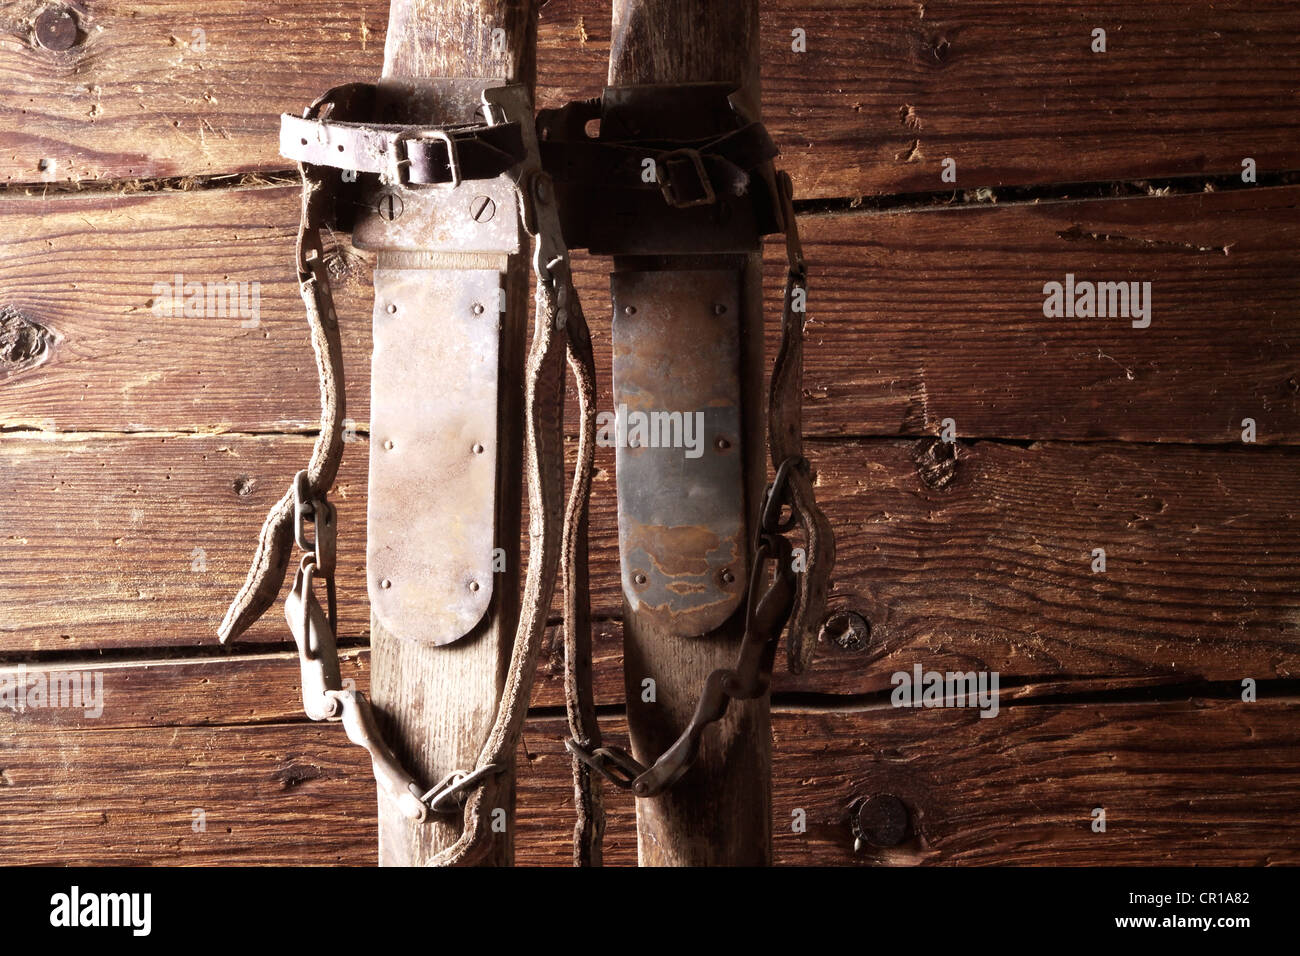 Vieux skis en bois avec une lanière binding leaning on a rustic wooden wall Banque D'Images